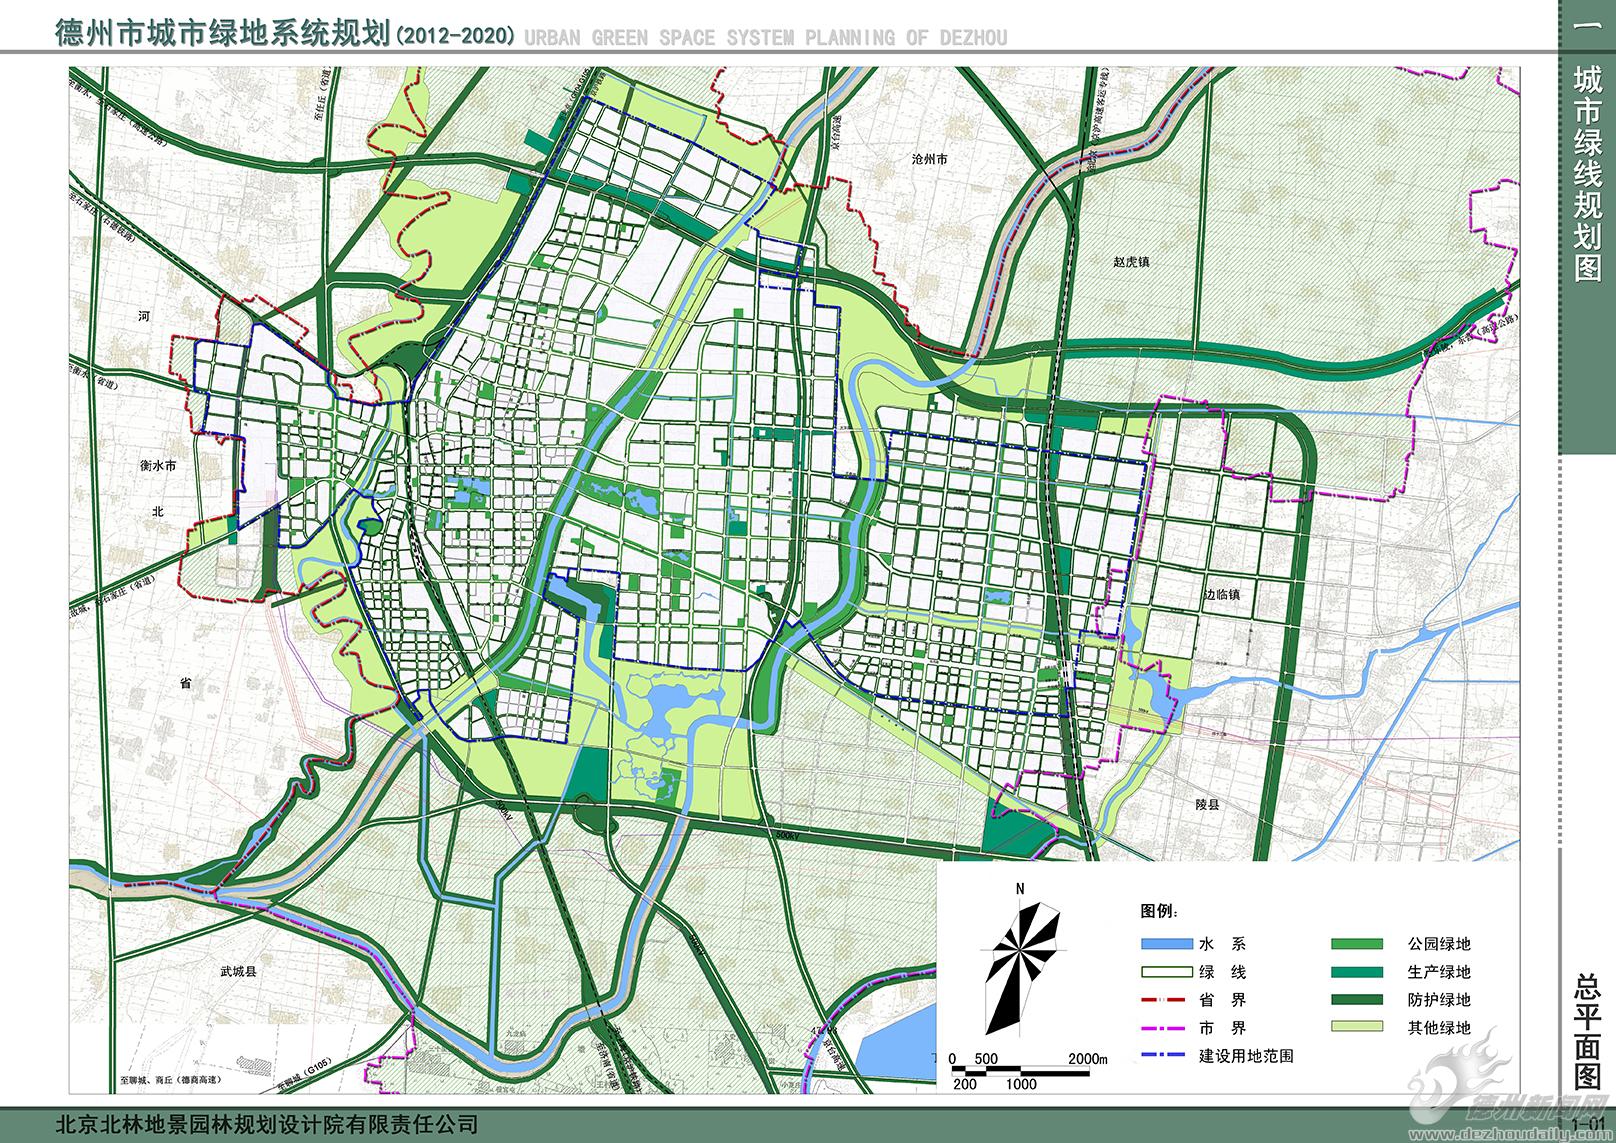 德州城市绿地系统规划公示20122020